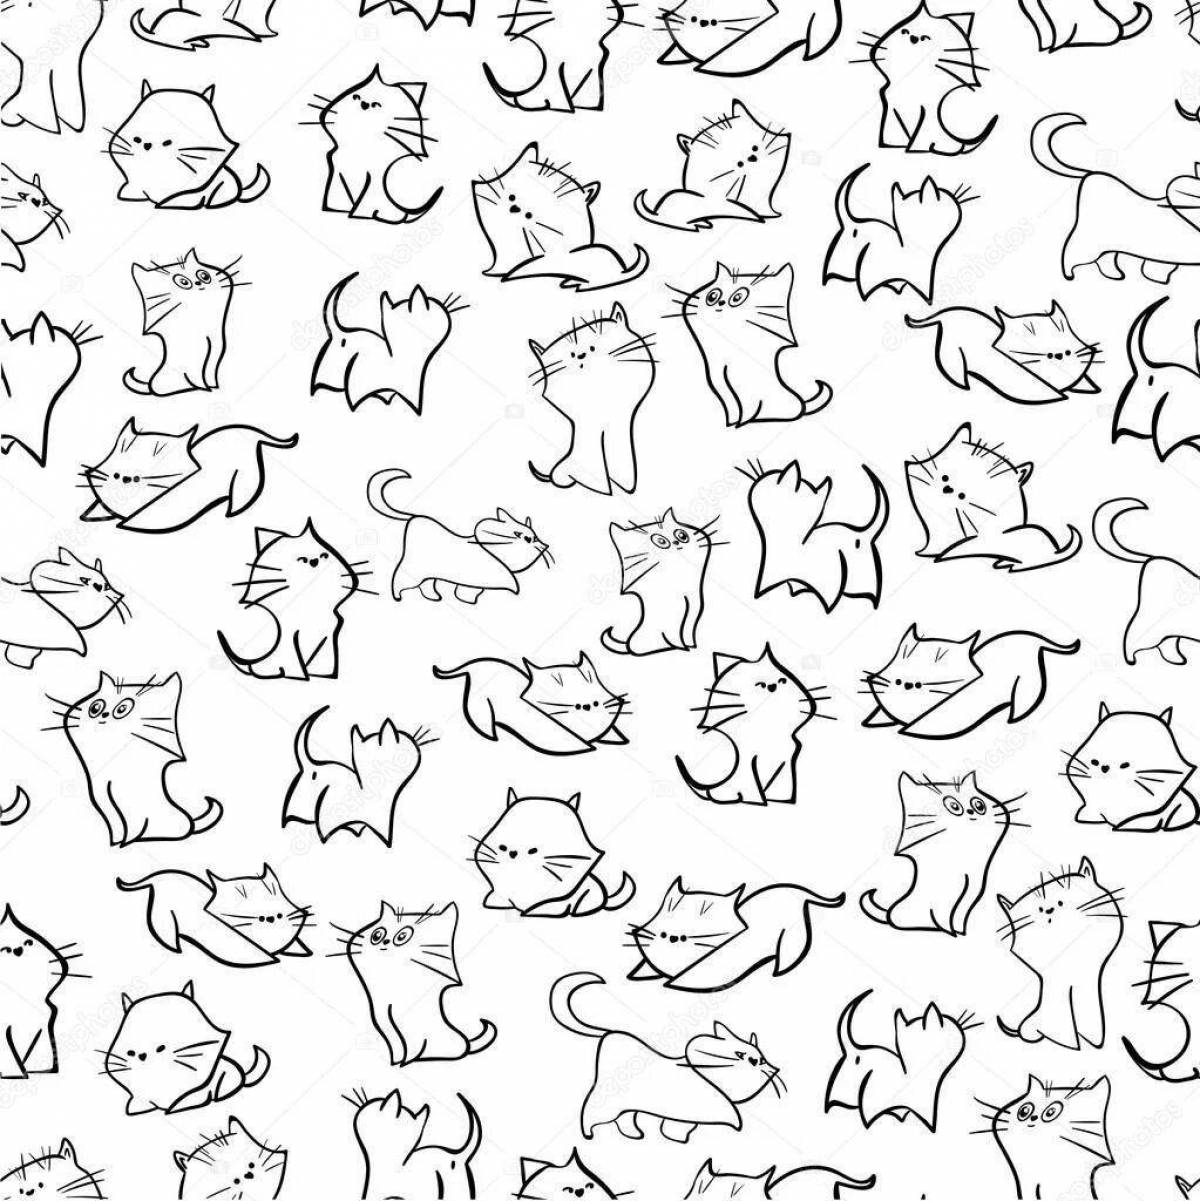 Великолепная раскраска с множеством кошек